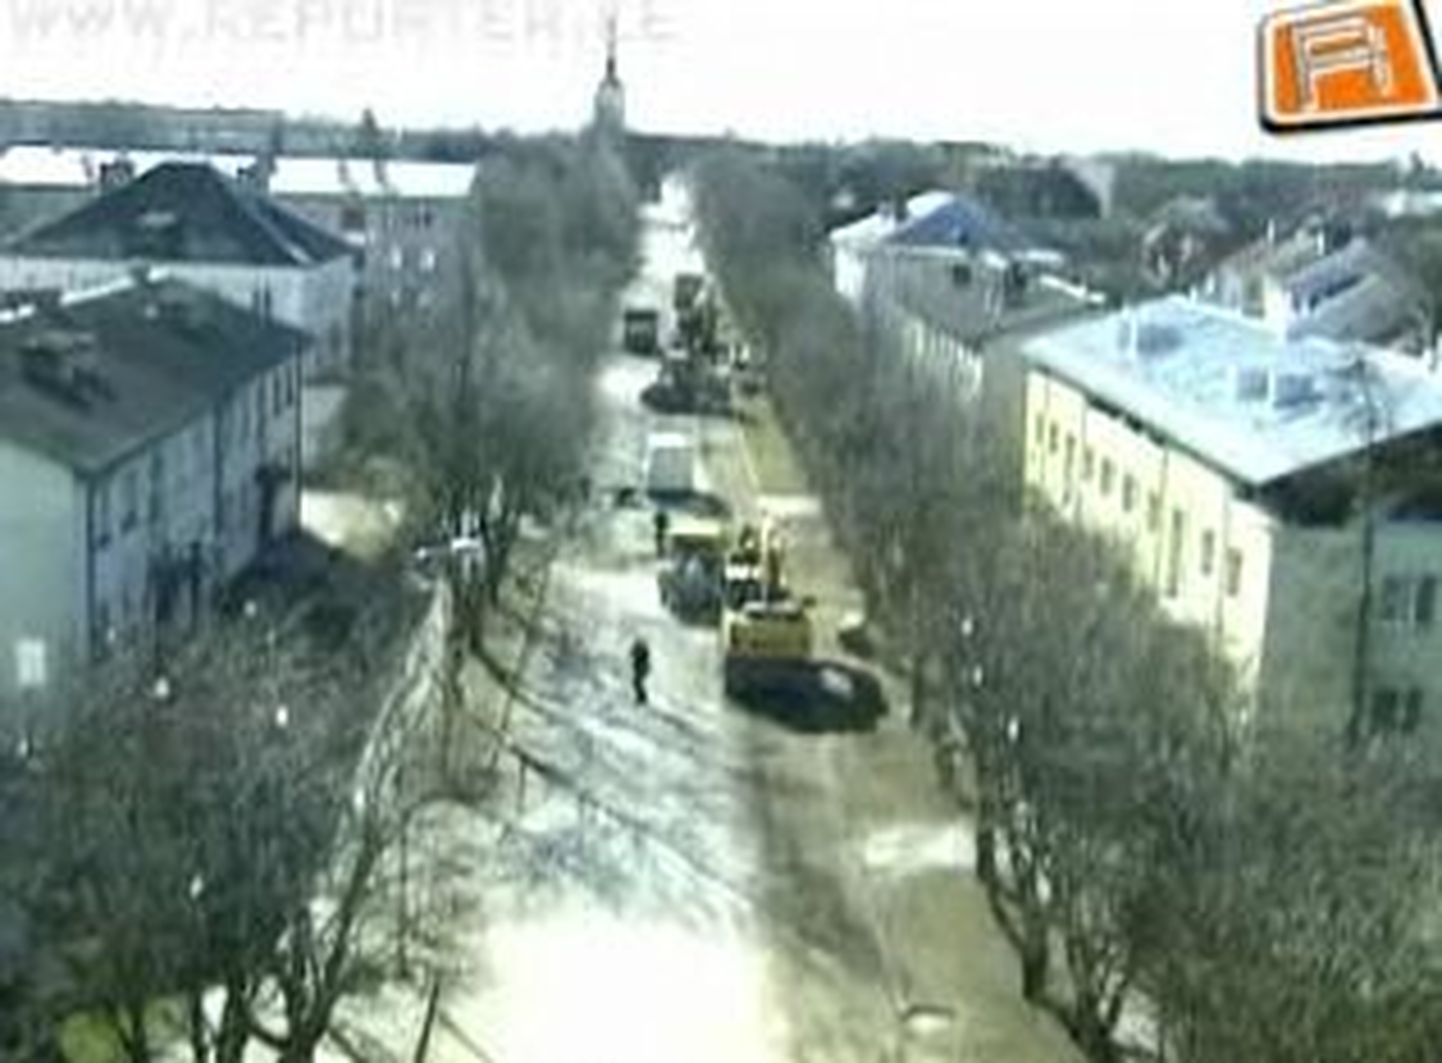 Alates eilsest on Kuressaares Torni tänaval puude otsas värvikirevad linnupeletid.